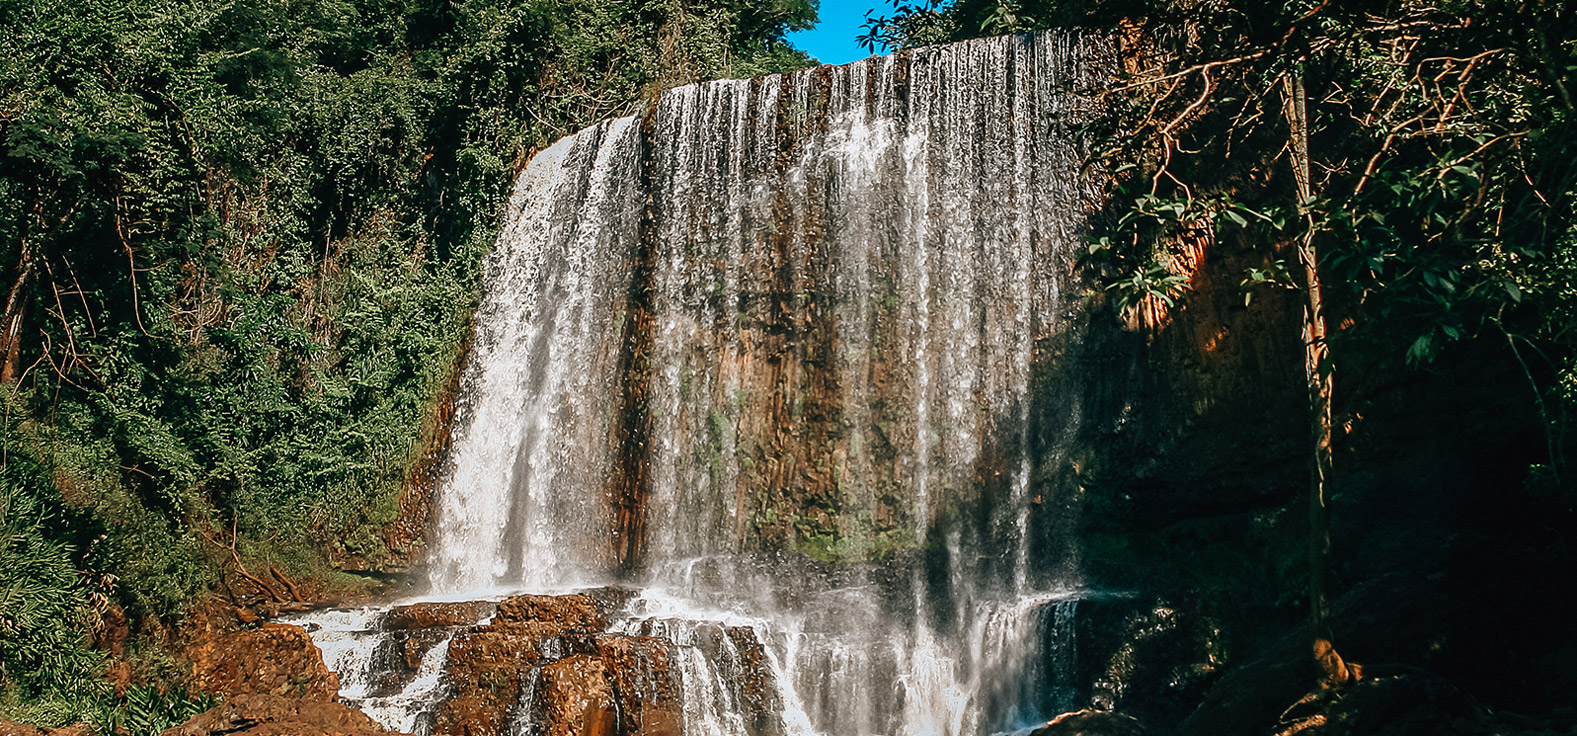 Cachoeira do Astor em Brotas | Portal Serra do Itaquerí